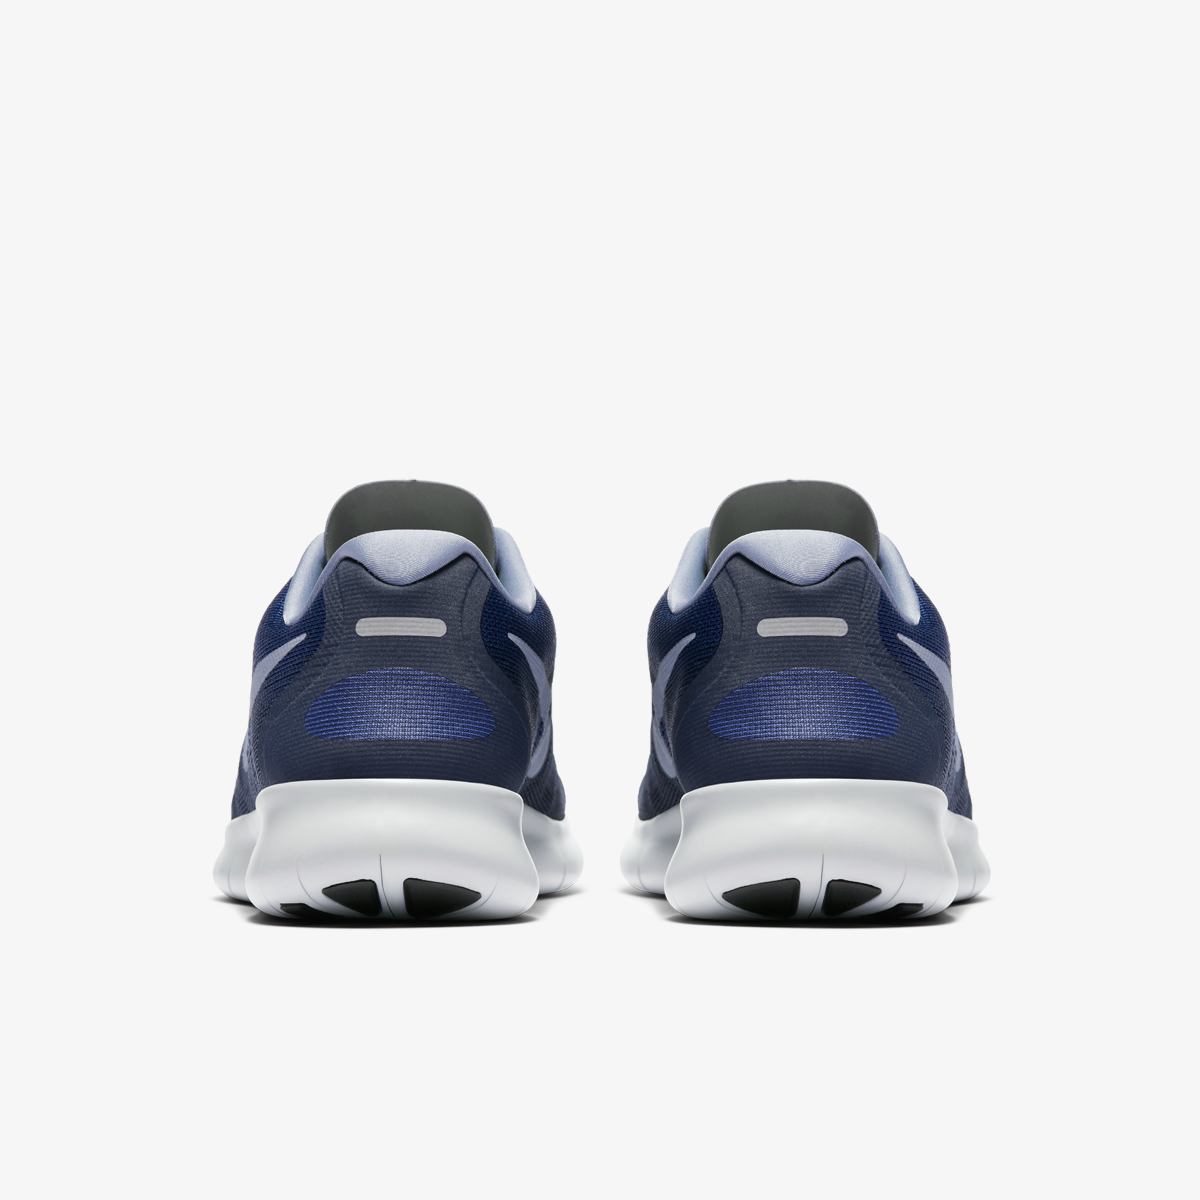 Кроссовки для бега Nike FREE RN 2017 